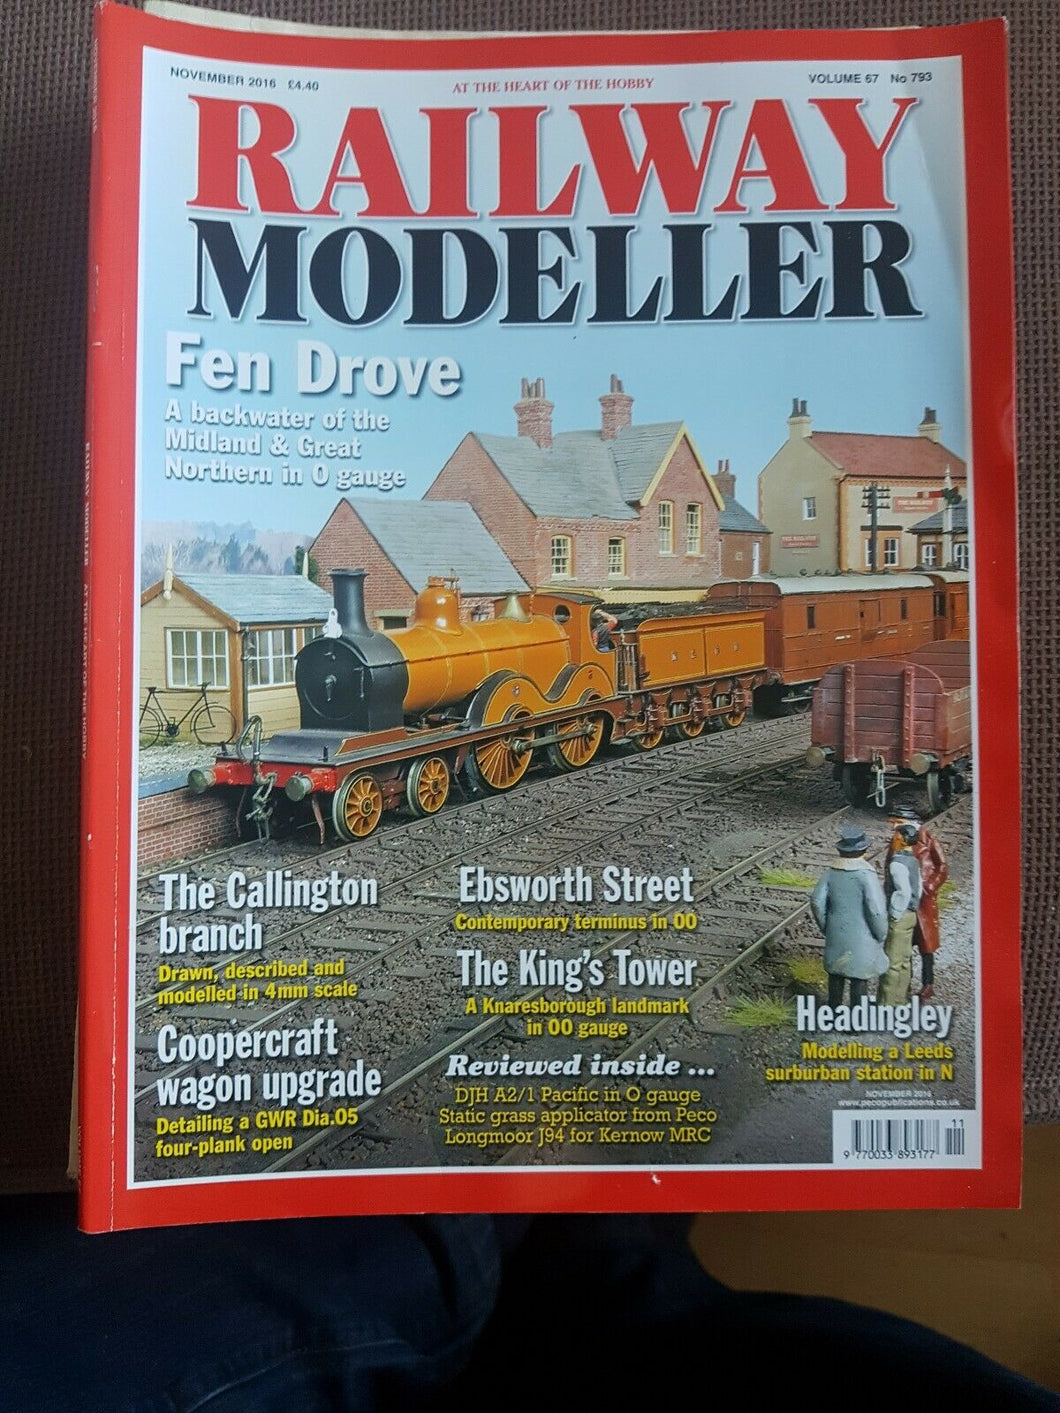 Railway modeller magazine November 2016